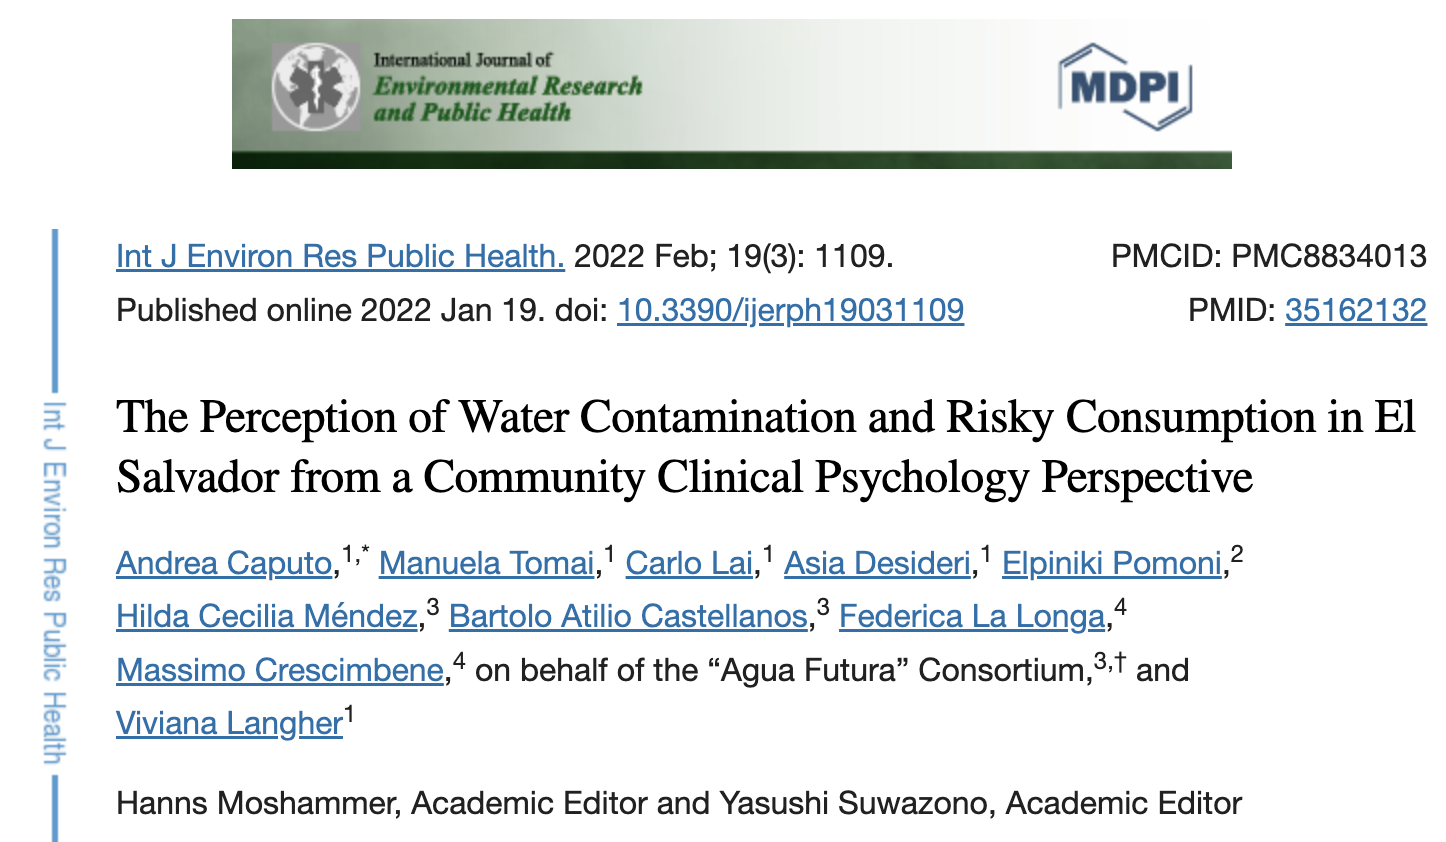 La percepción de la contaminación del agua y el consumo de riesgo en El Salvador desde una perspectiva clínica psicológica comunitaria (NIH)